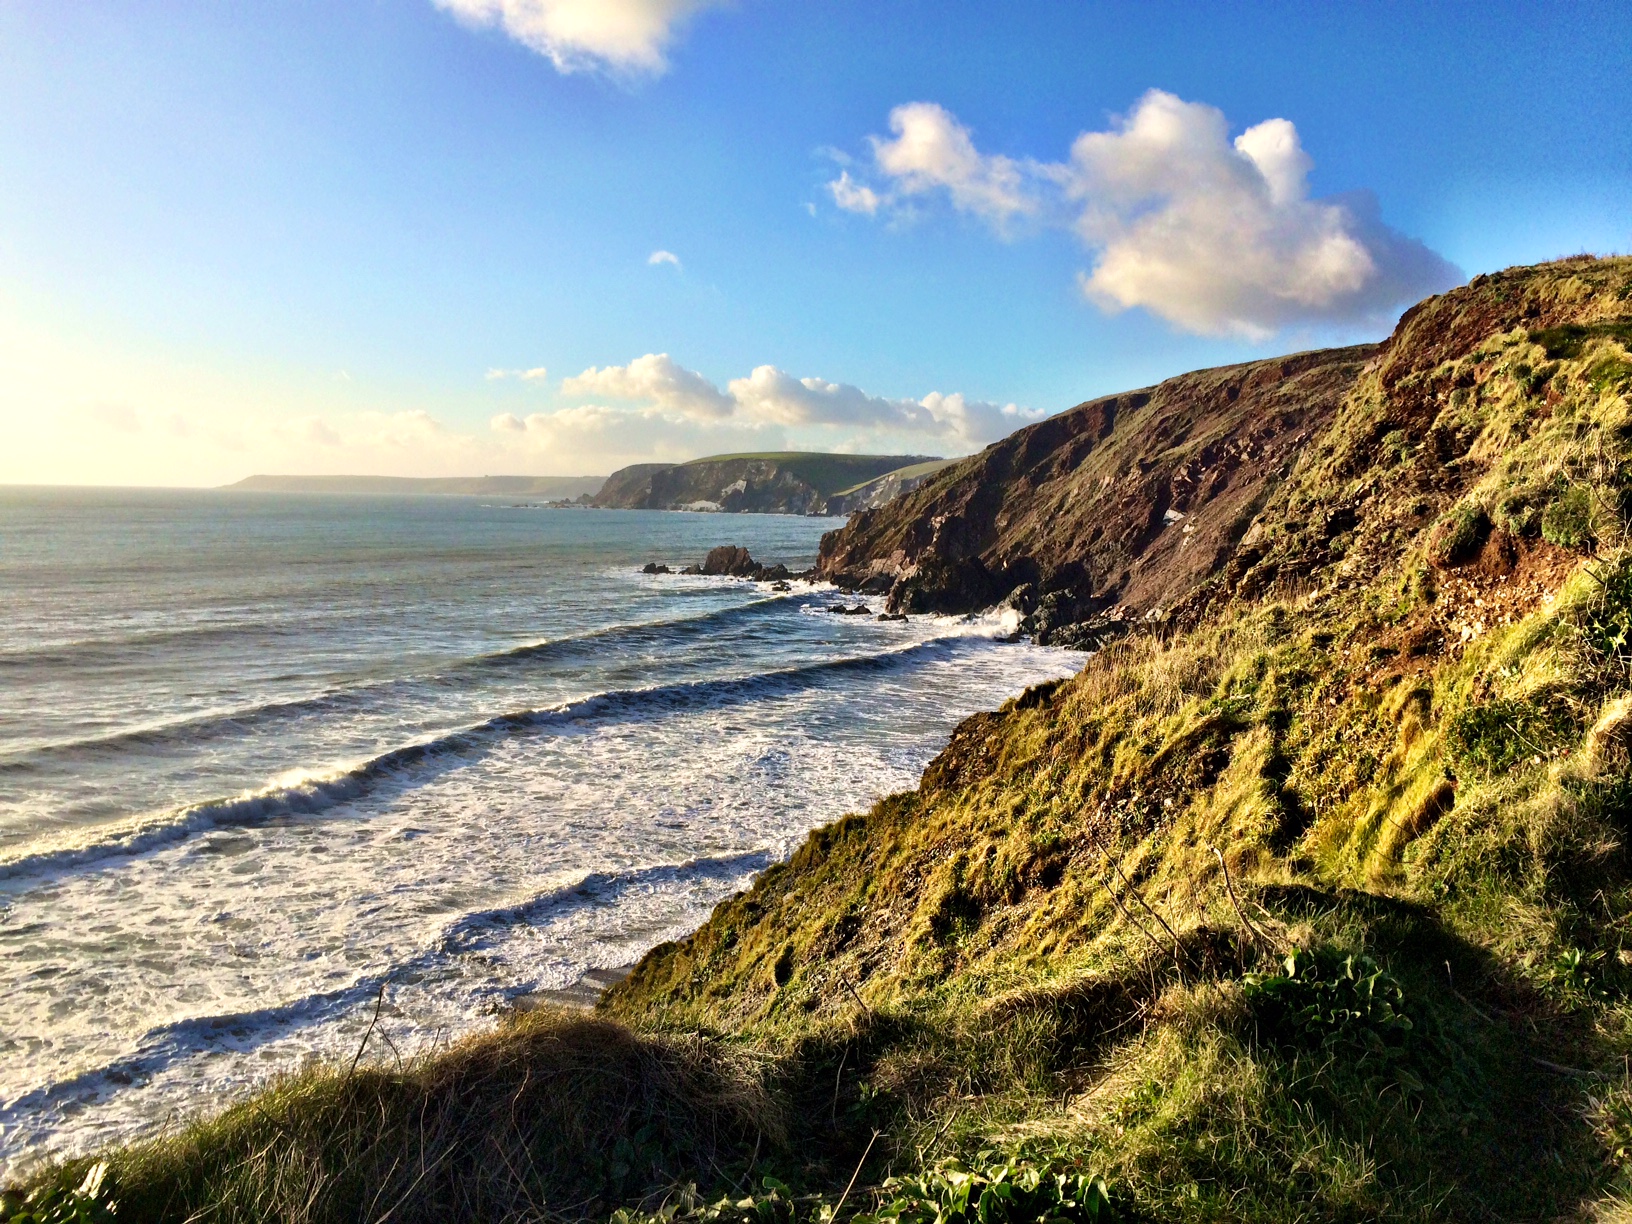 Views over The Devon Coastline and Dartmoor